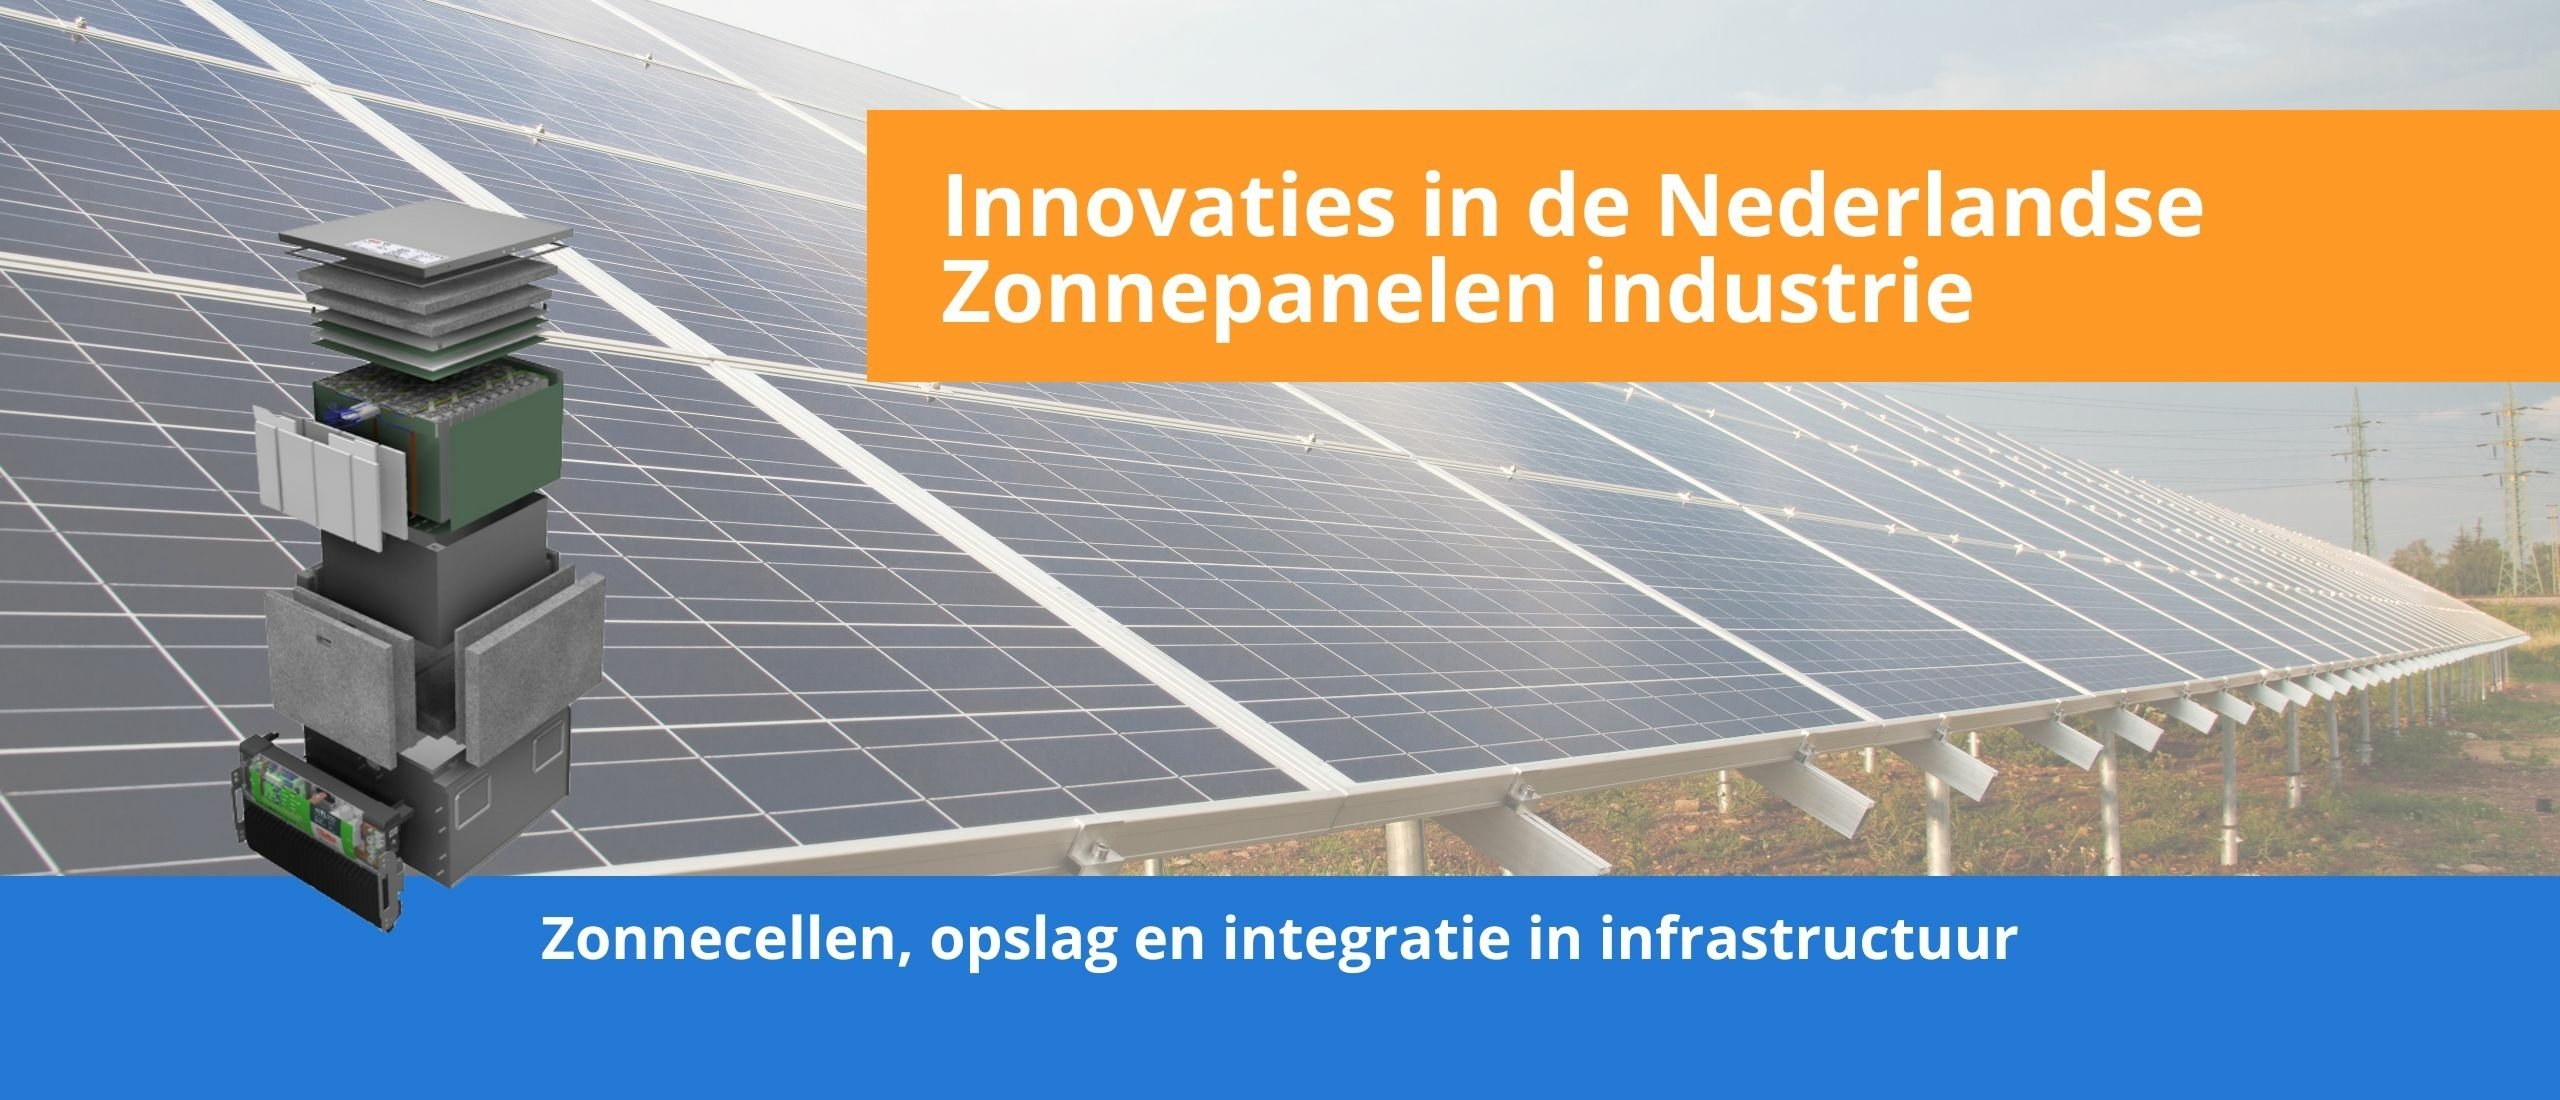 De Drie Belangrijkste Innovaties in de Nederlandse Zonnepanelenindustrie